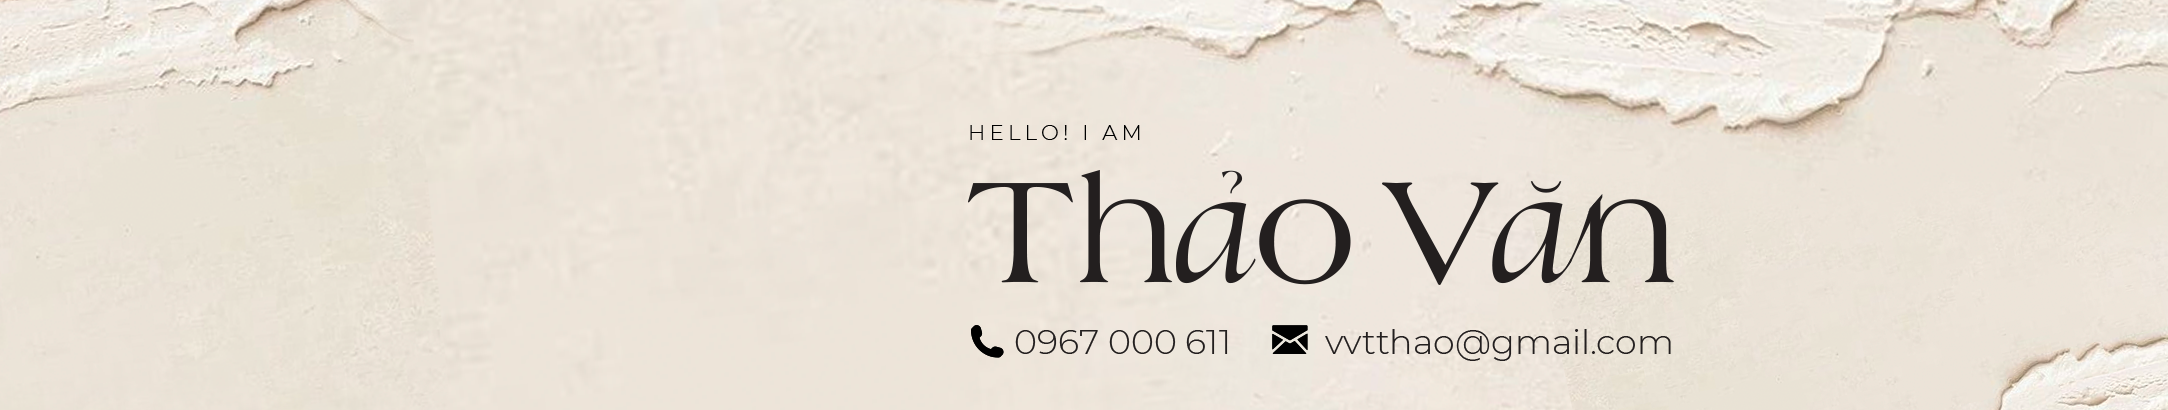 Thao Van's profile banner